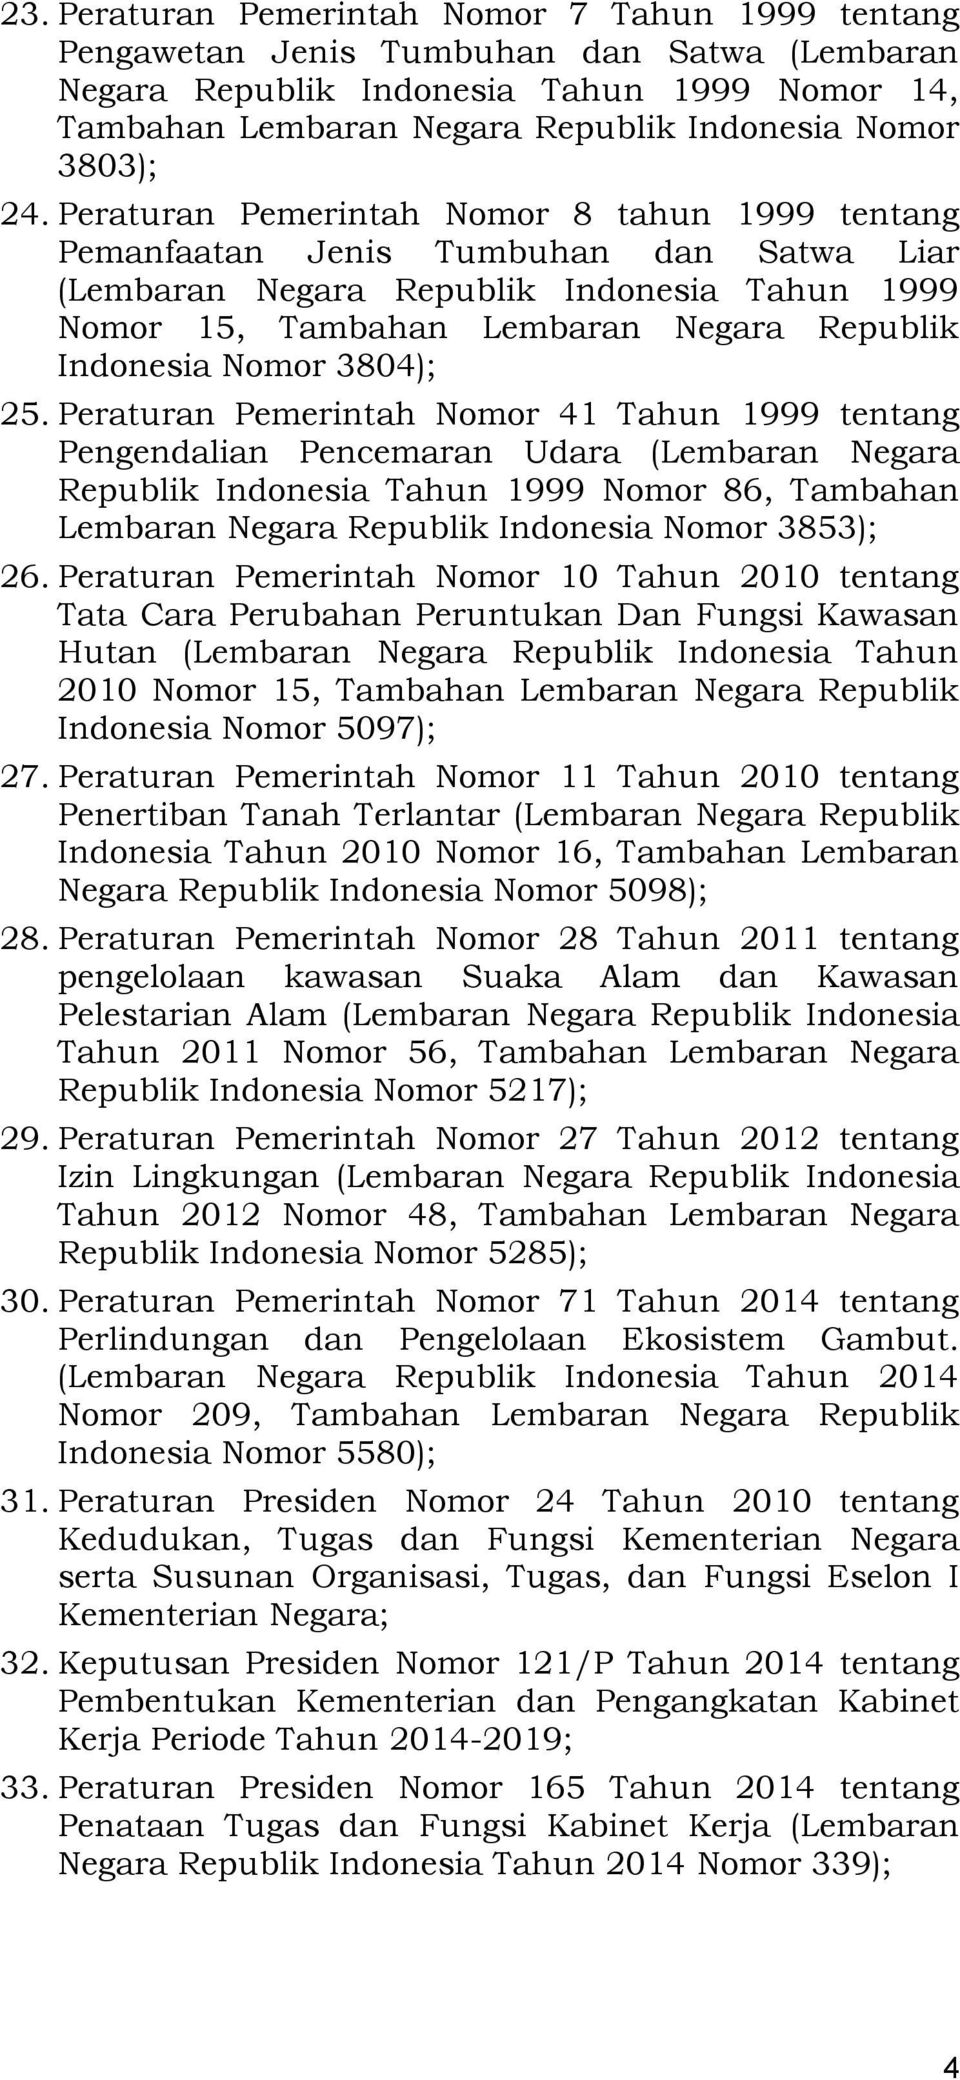 Peraturan Pemerintah Nomor 8 tahun 1999 tentang Pemanfaatan Jenis Tumbuhan dan Satwa Liar (Lembaran Negara Republik Indonesia Tahun 1999 Nomor 15, Tambahan Lembaran Negara Republik Indonesia Nomor